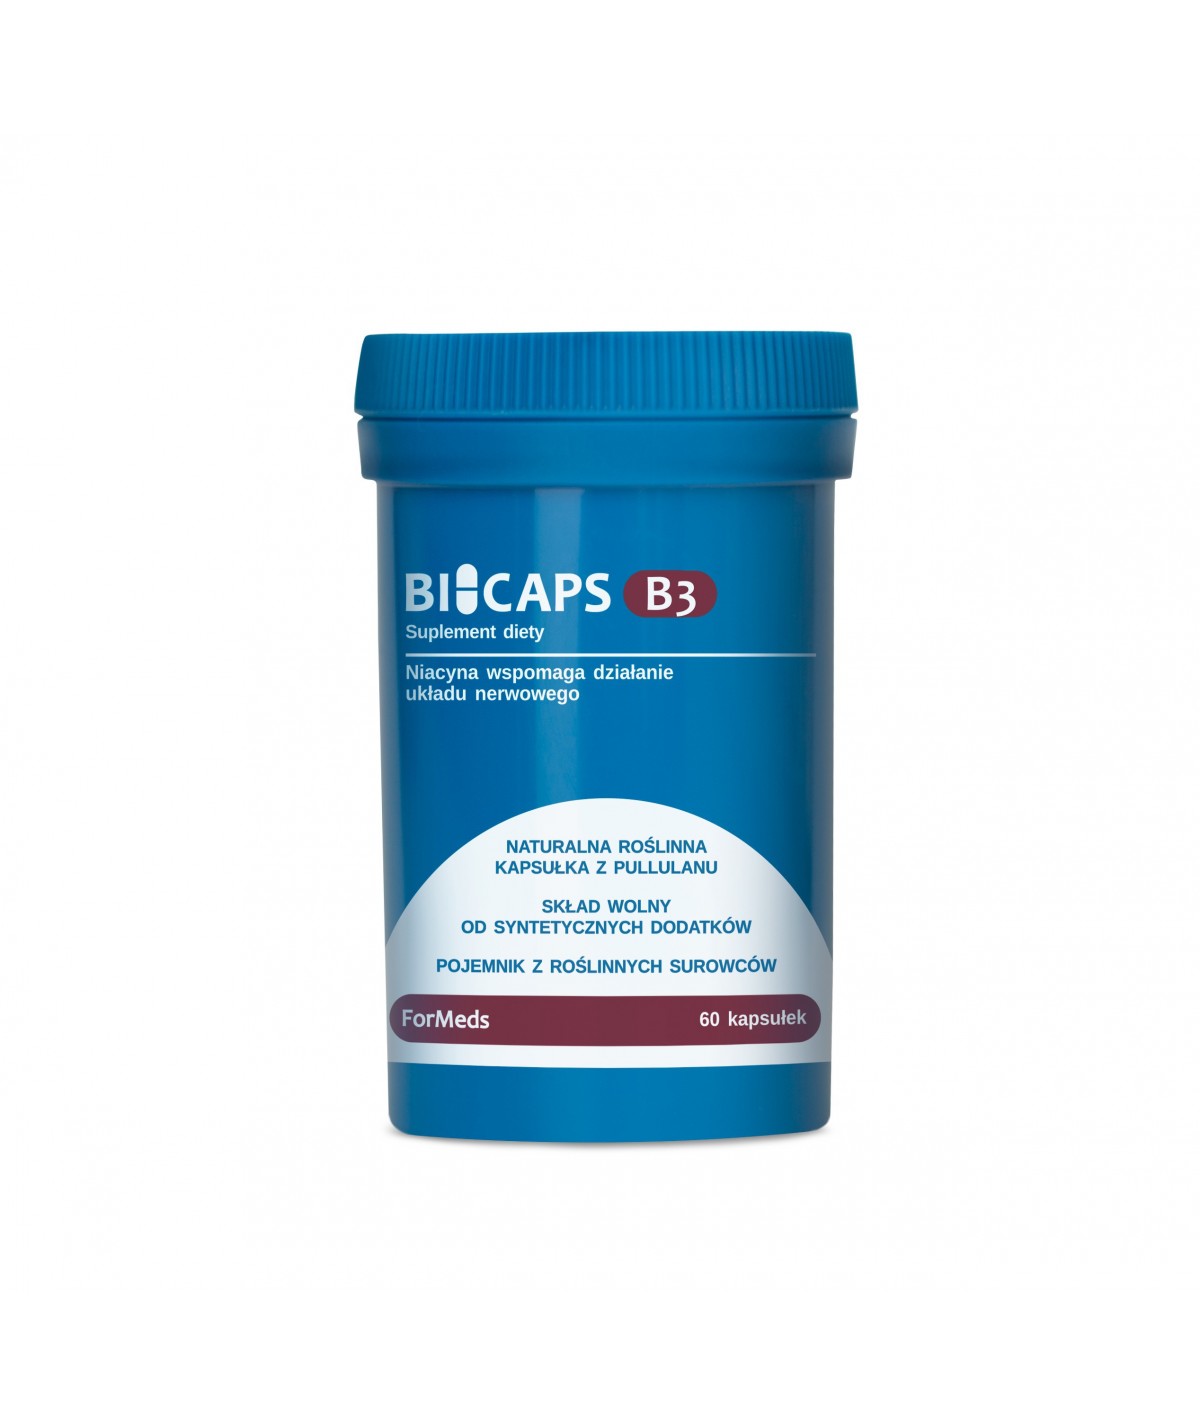 Bicaps B3|Formeds